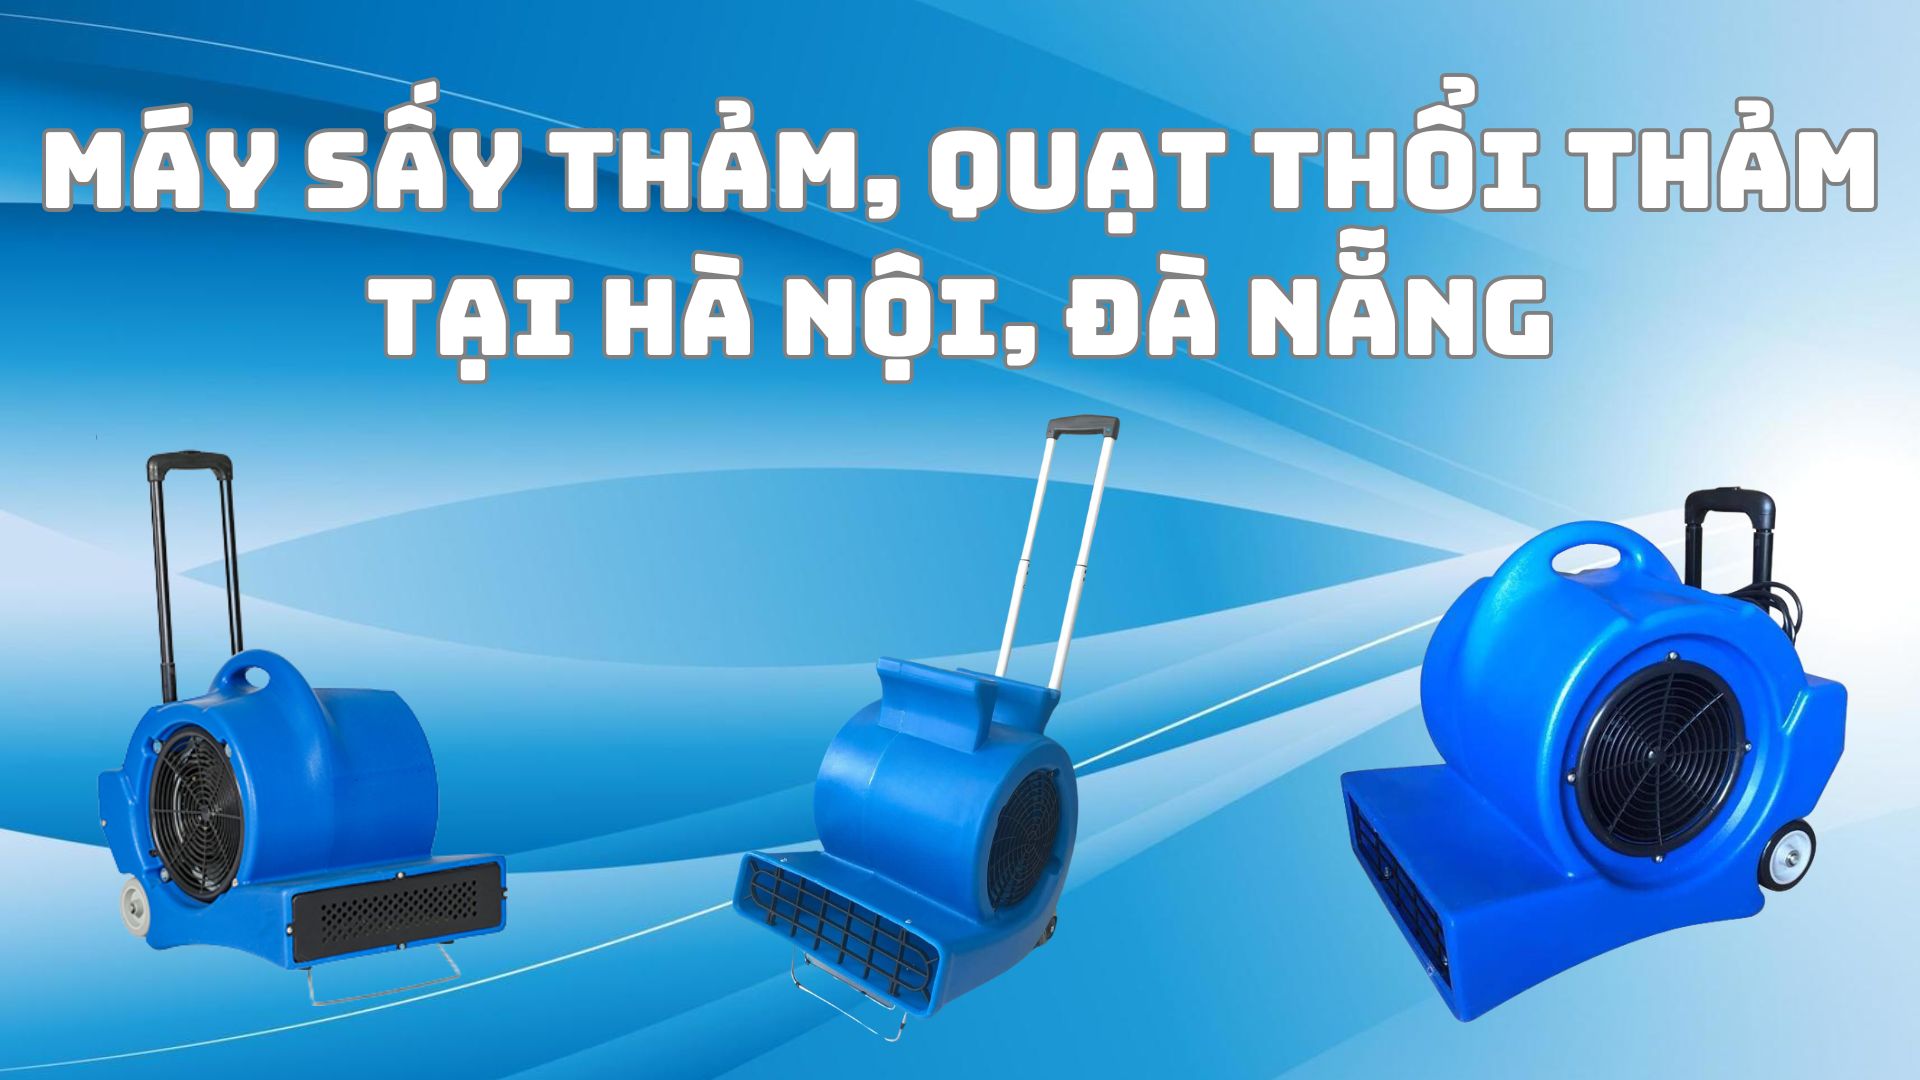 Địa chỉ mua bán máy sấy thảm, quạt thổi thảm giá rẻ tại Hà Nội, Đà Nẵng